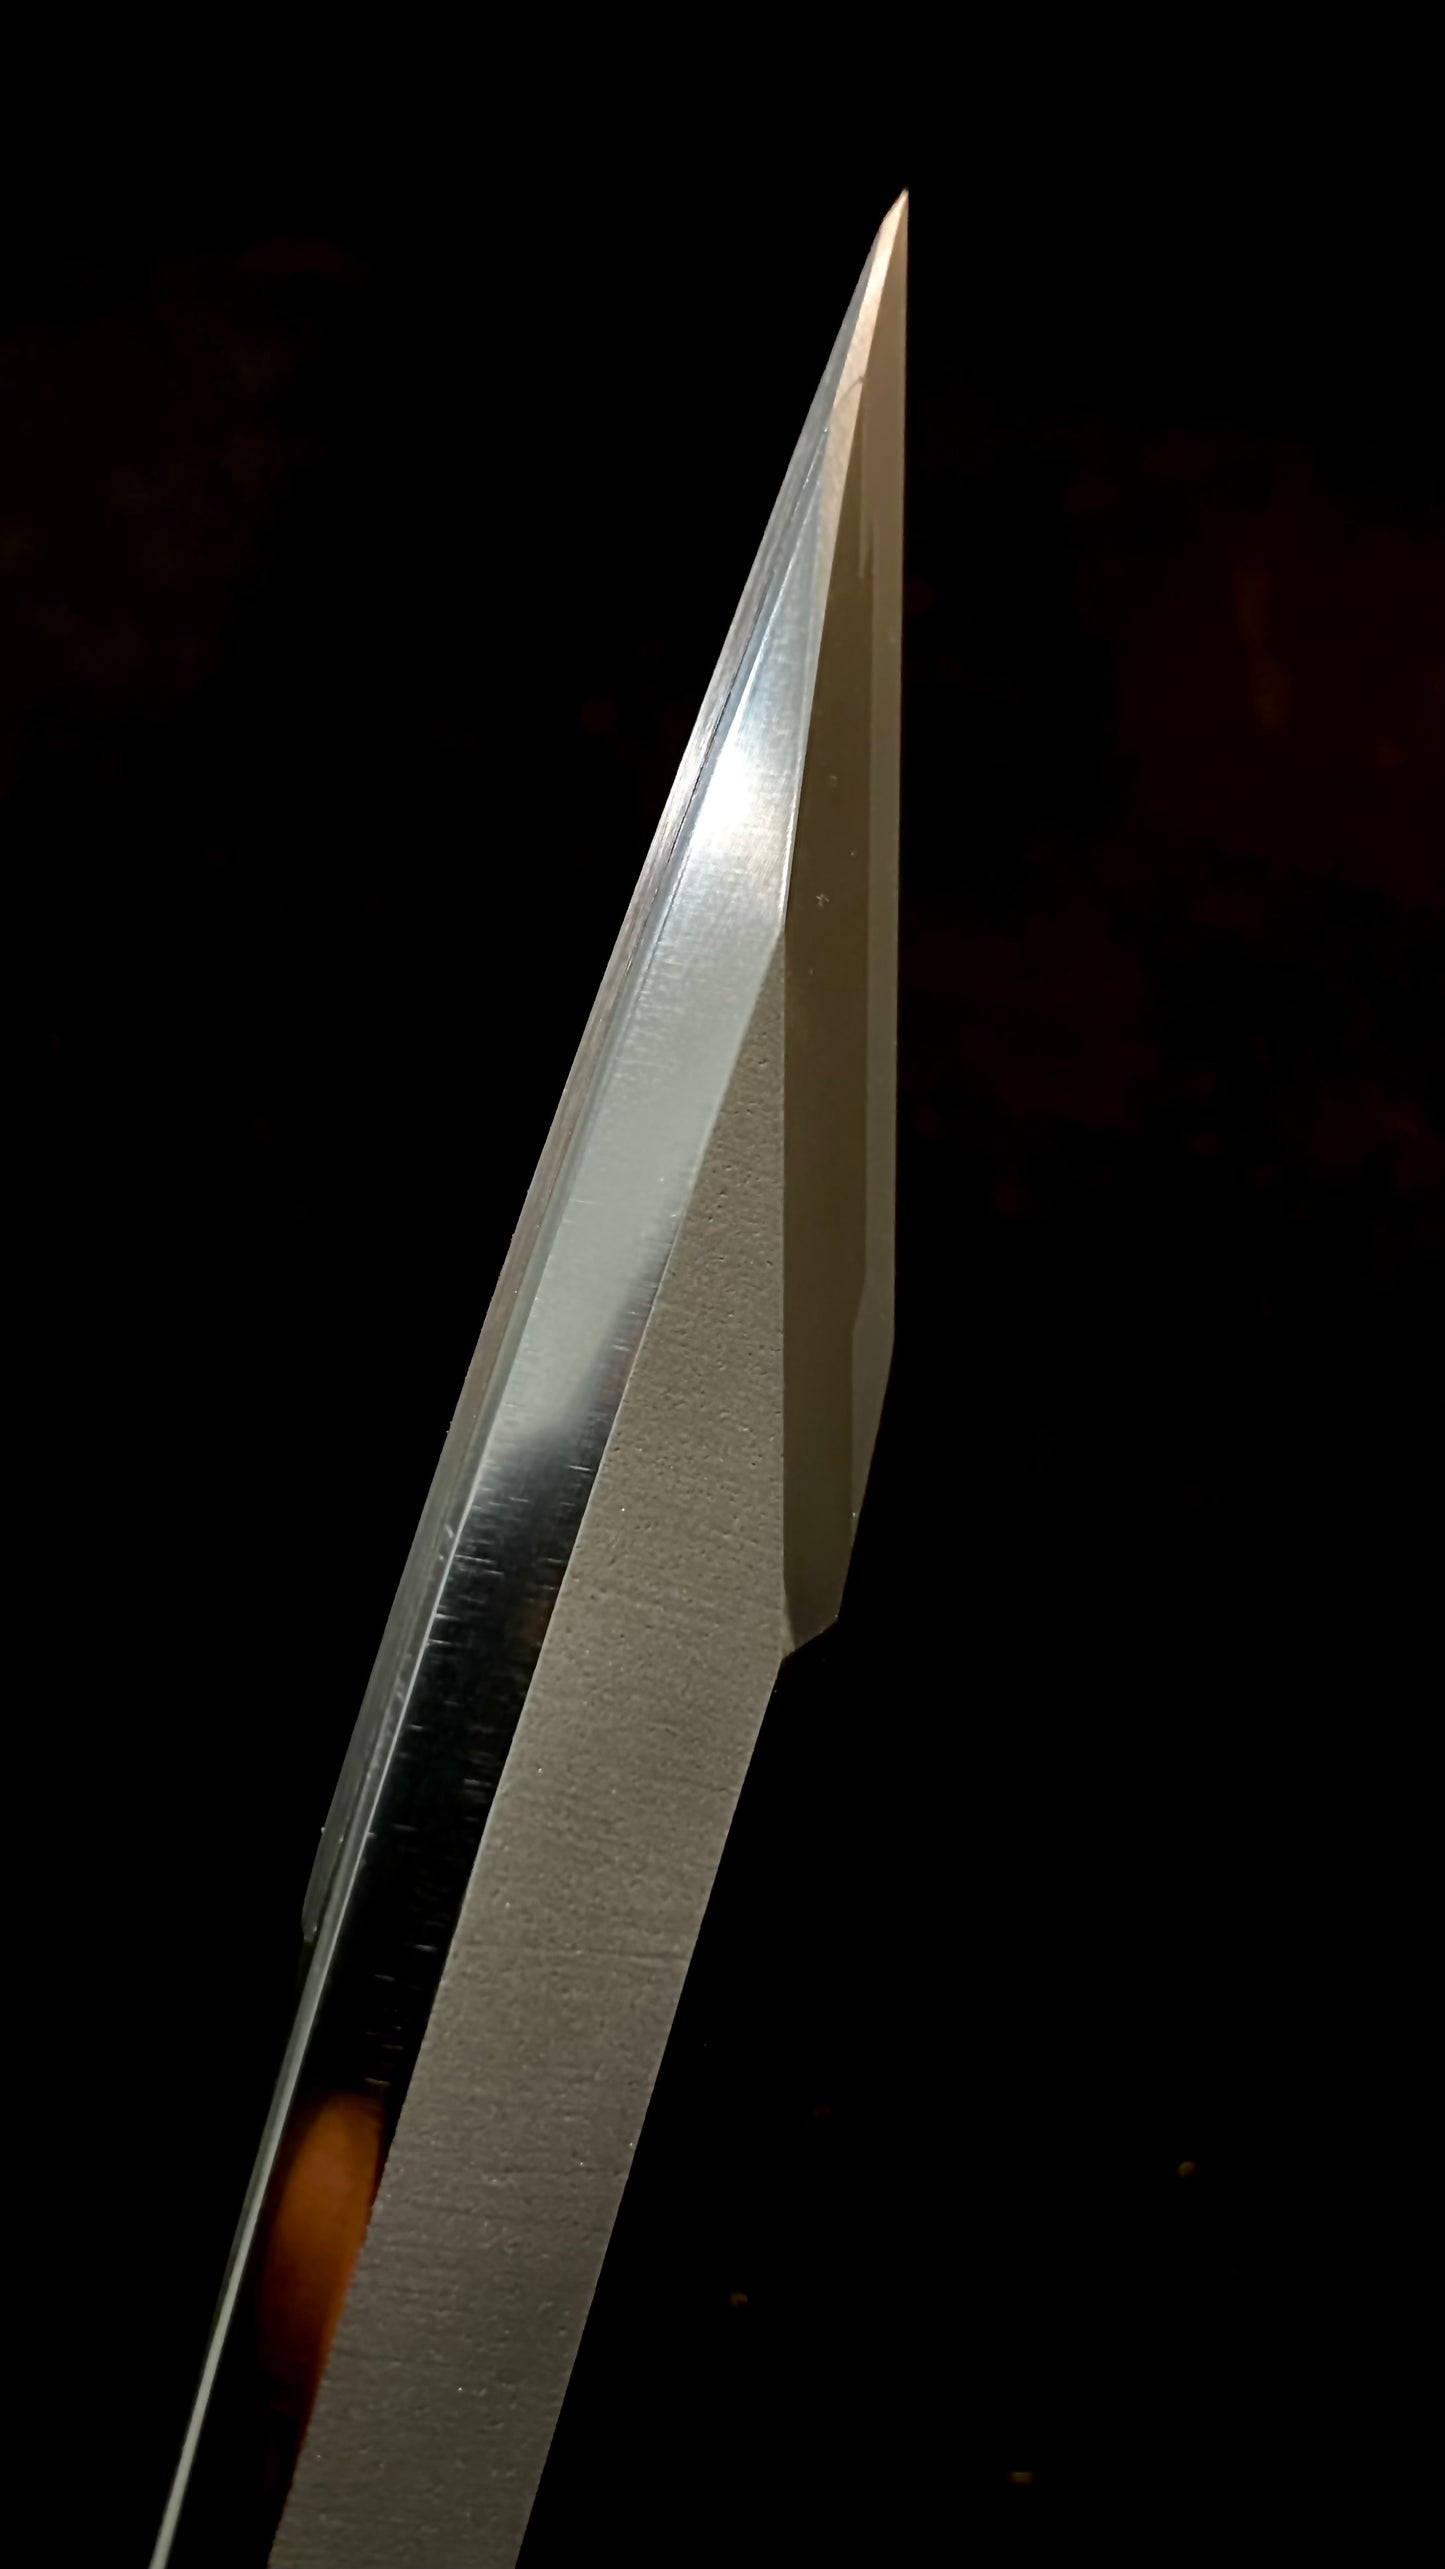 Zen-Wu G-2 Paring Knife